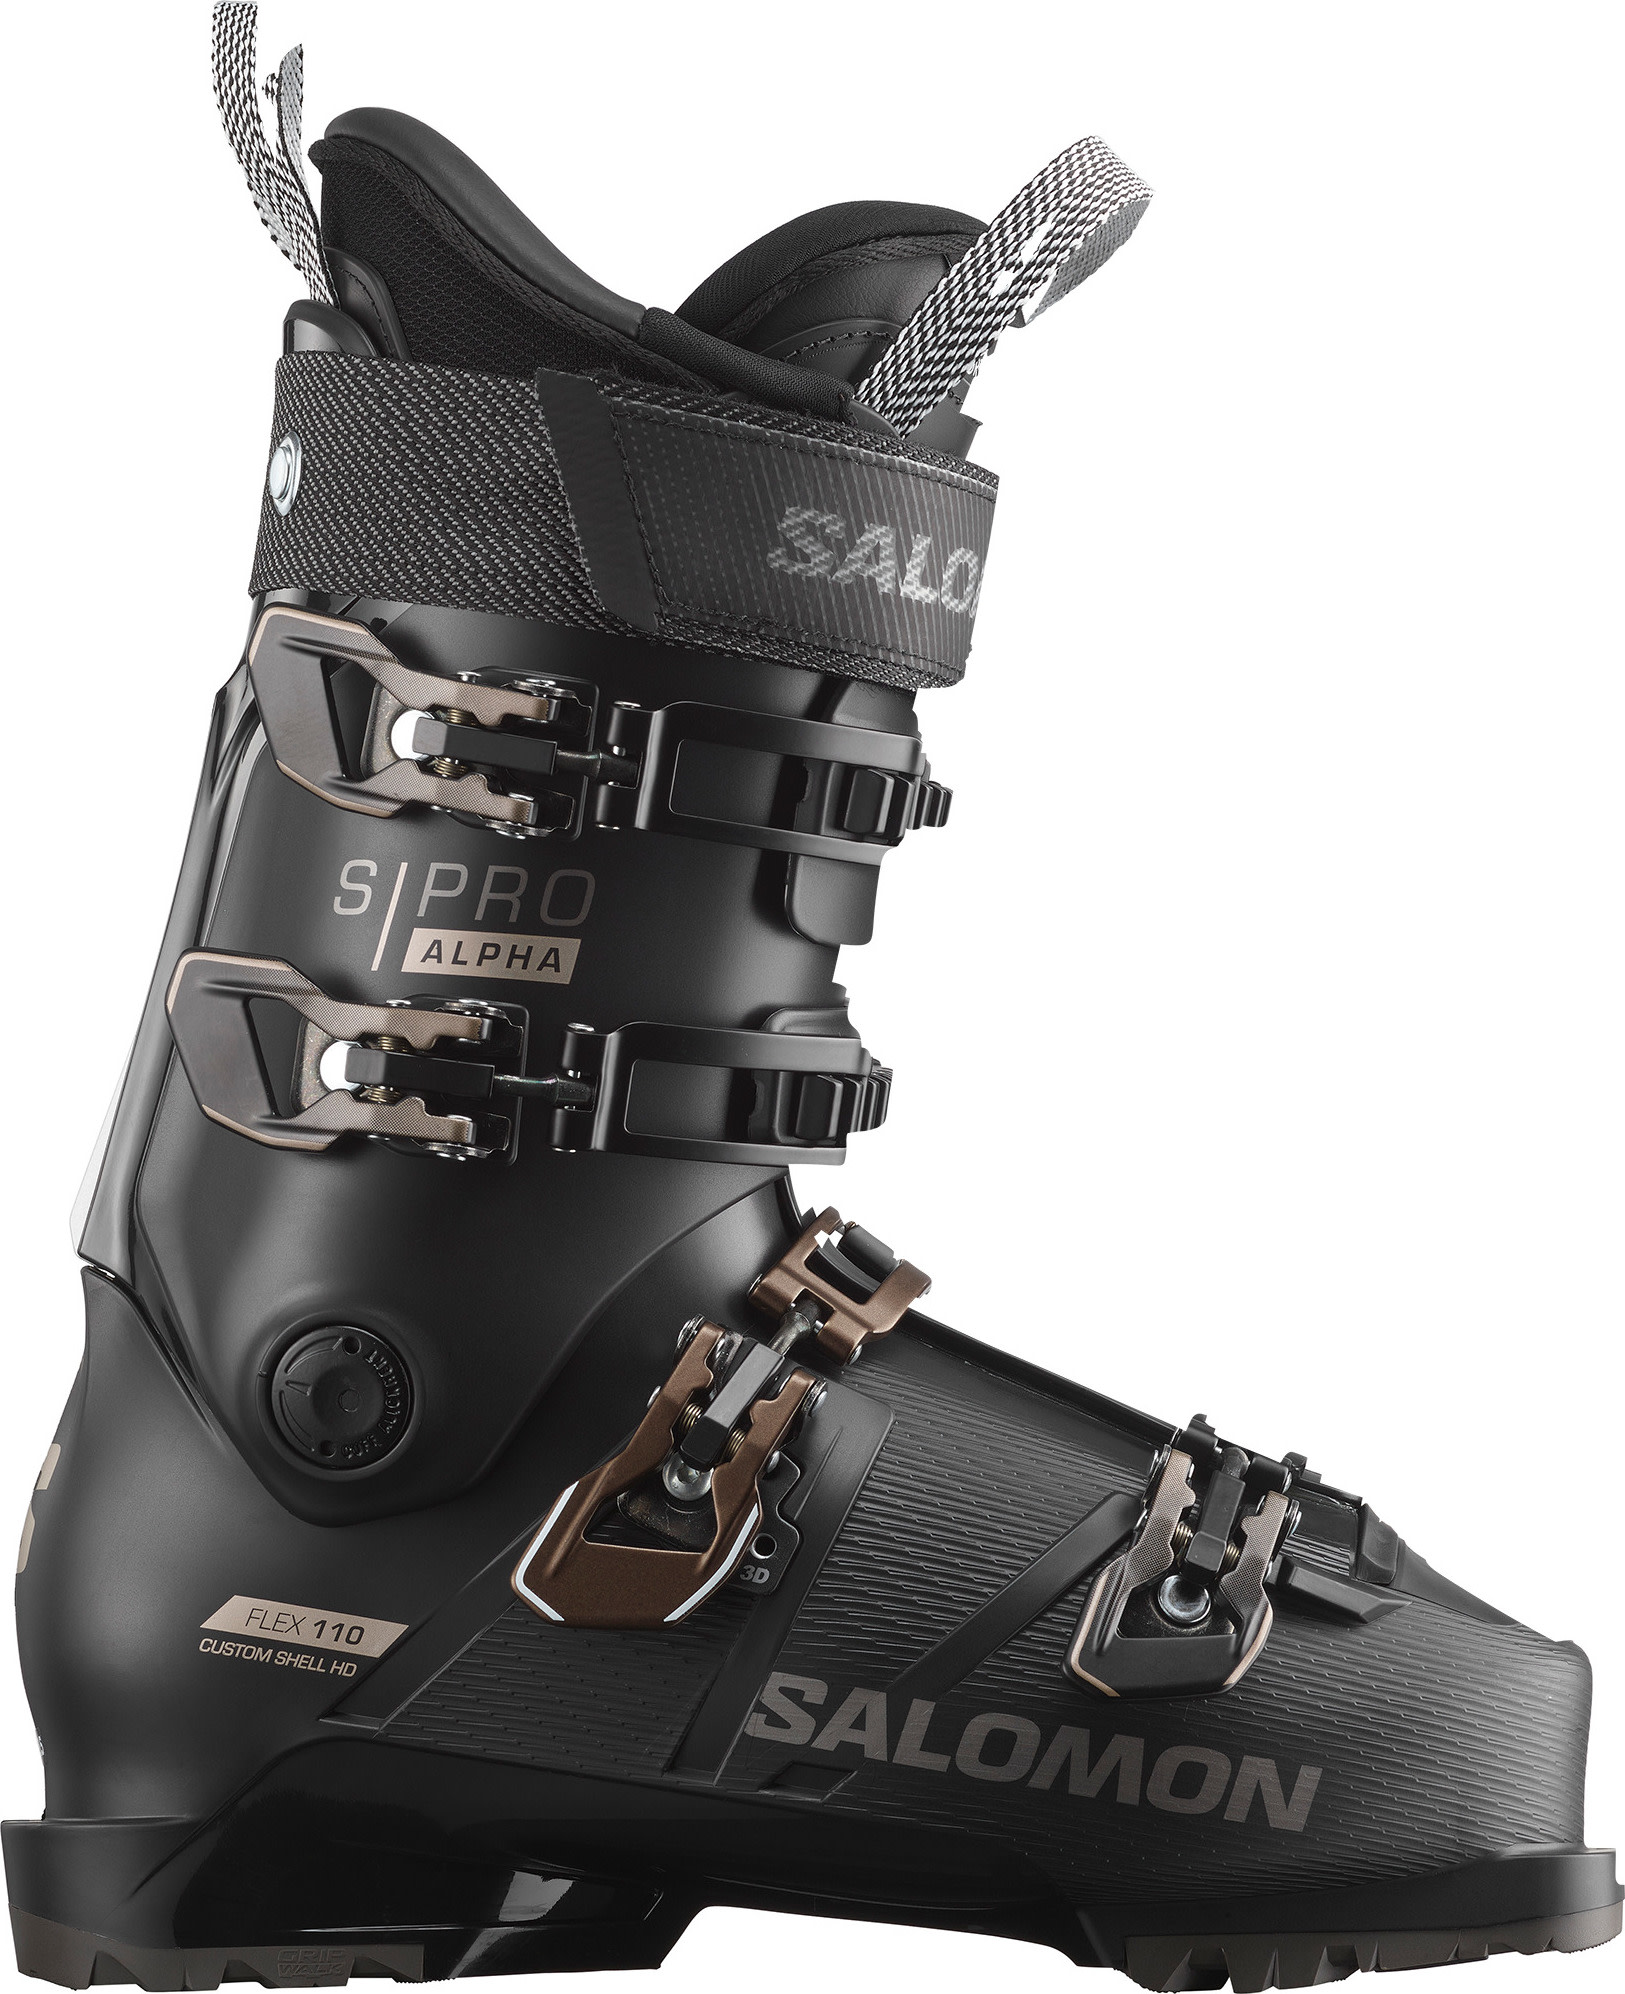 Salomon Men’s S/Pro Alpha 110 Black/Titanium Metal